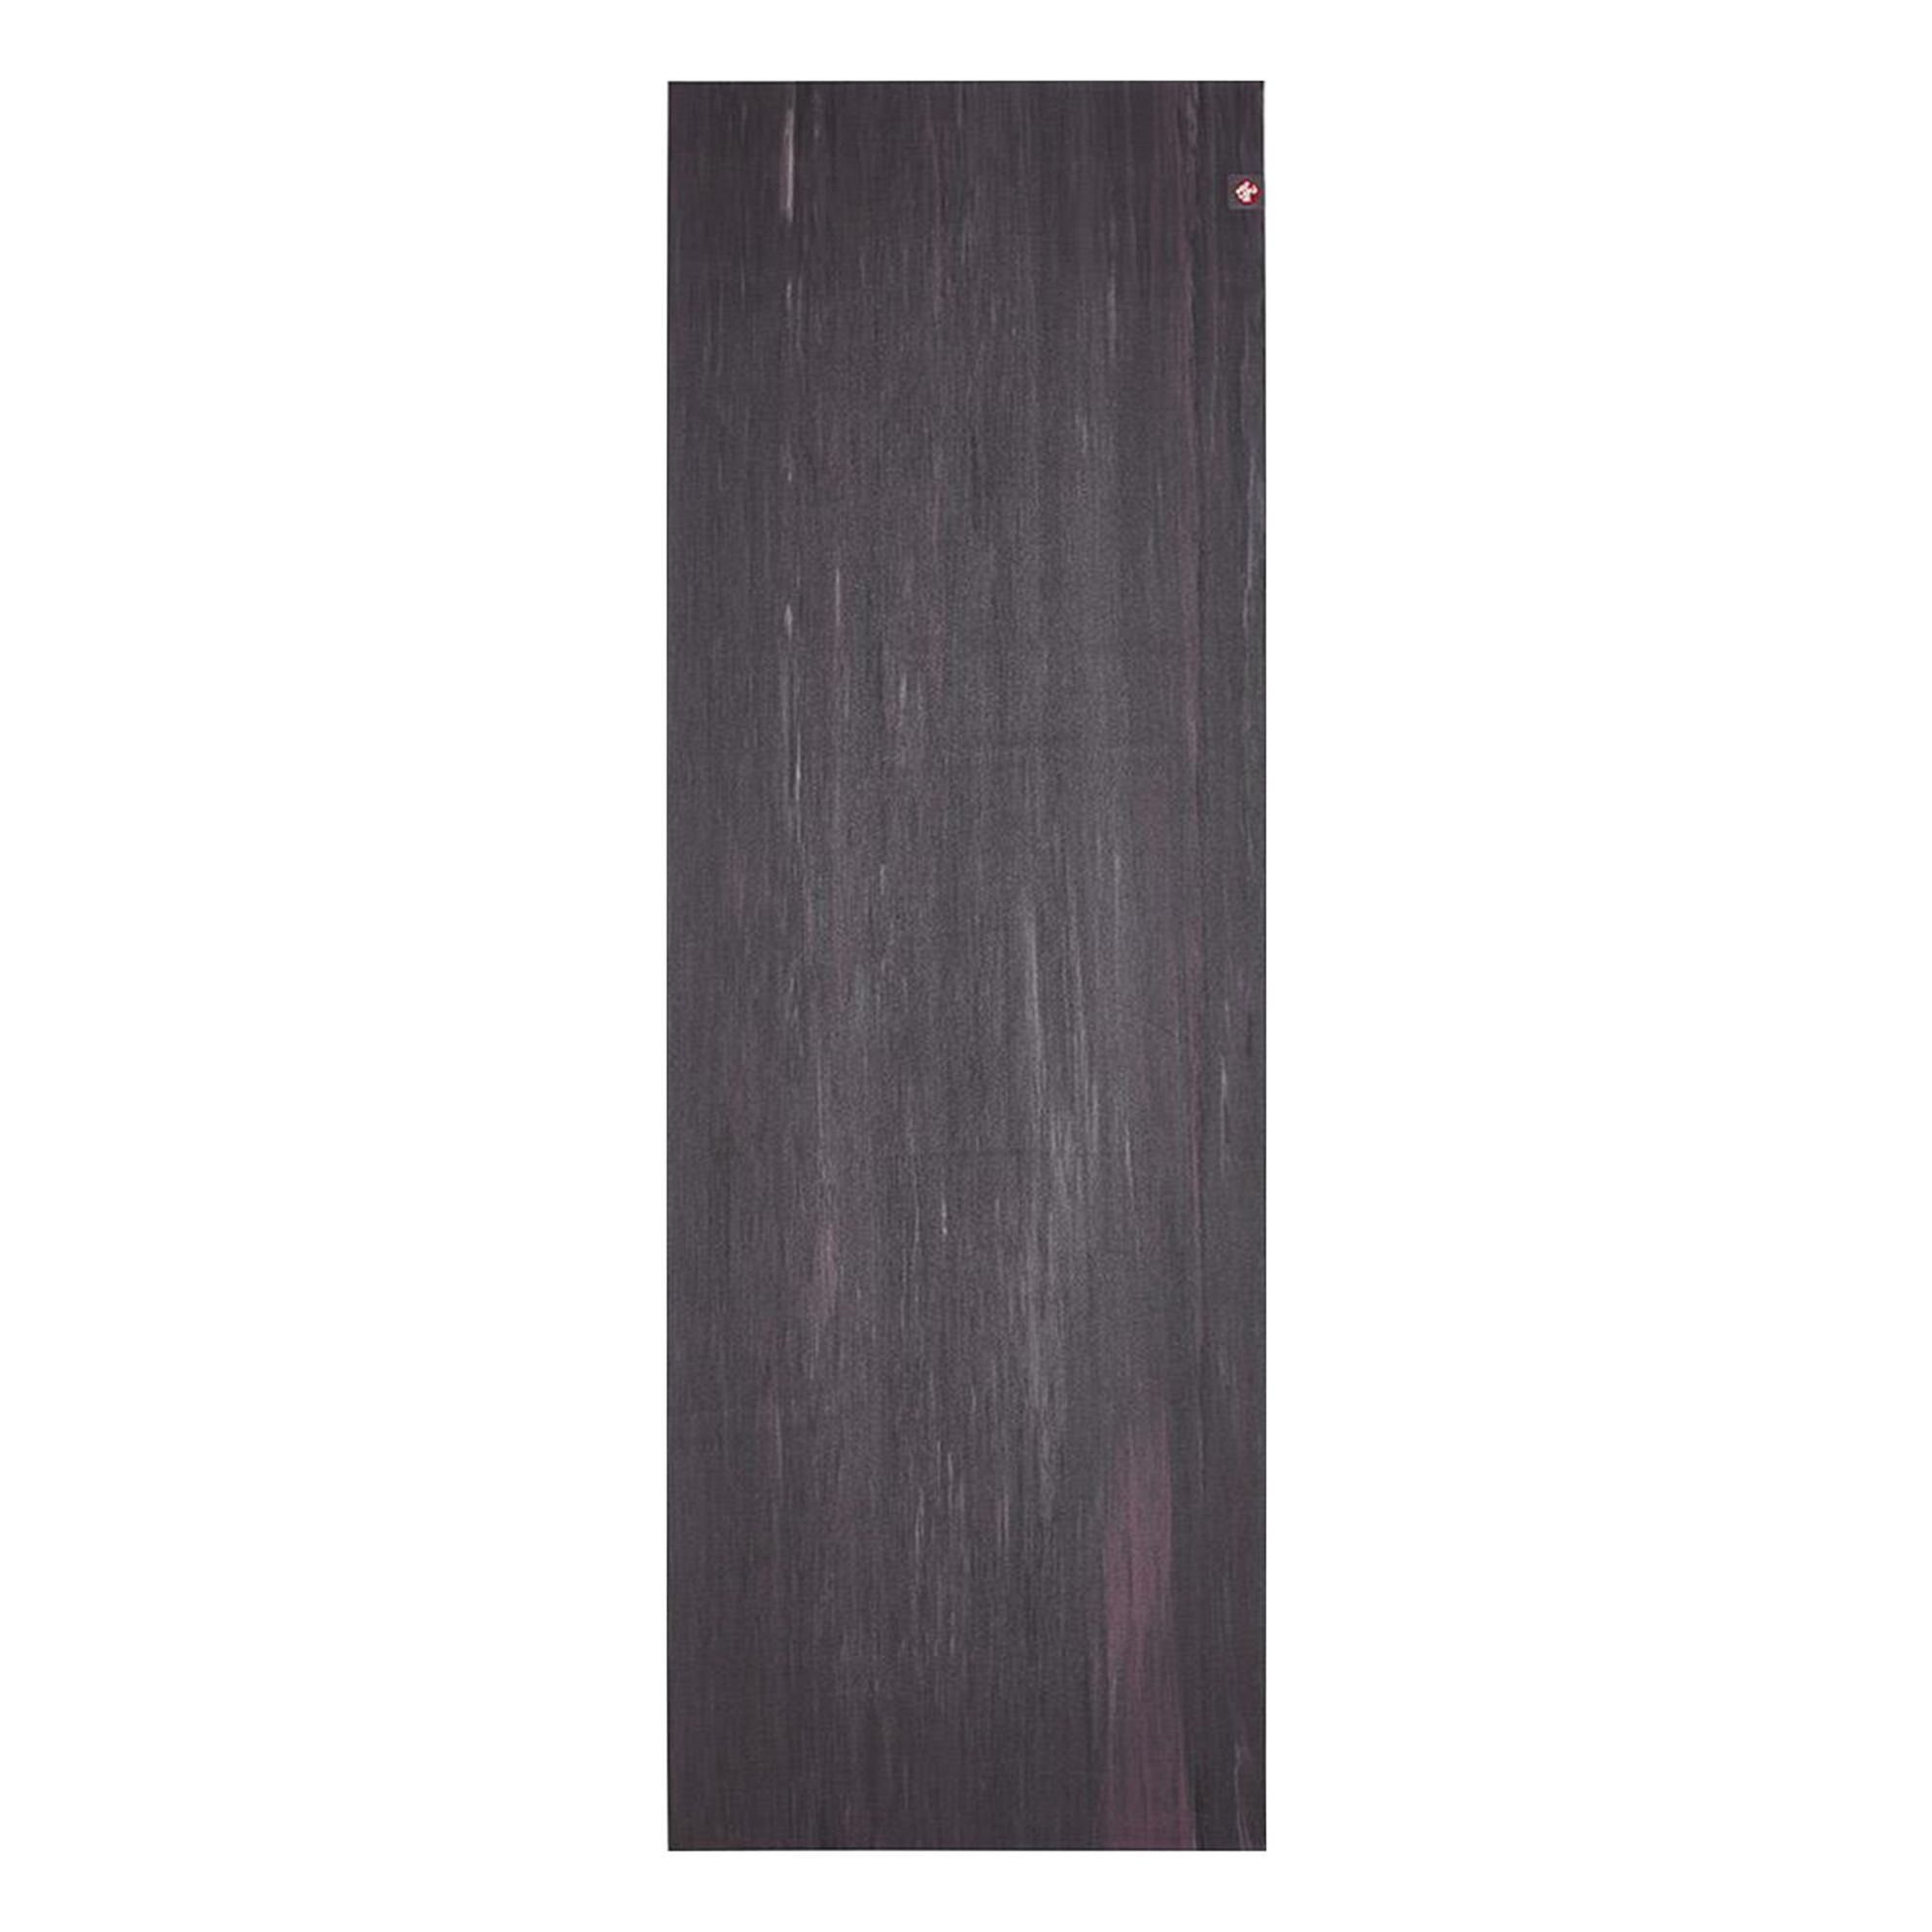 Manduka - Tapis de Yoga eKO Superlite Travel 1.5mm - Femme - Marbré noir